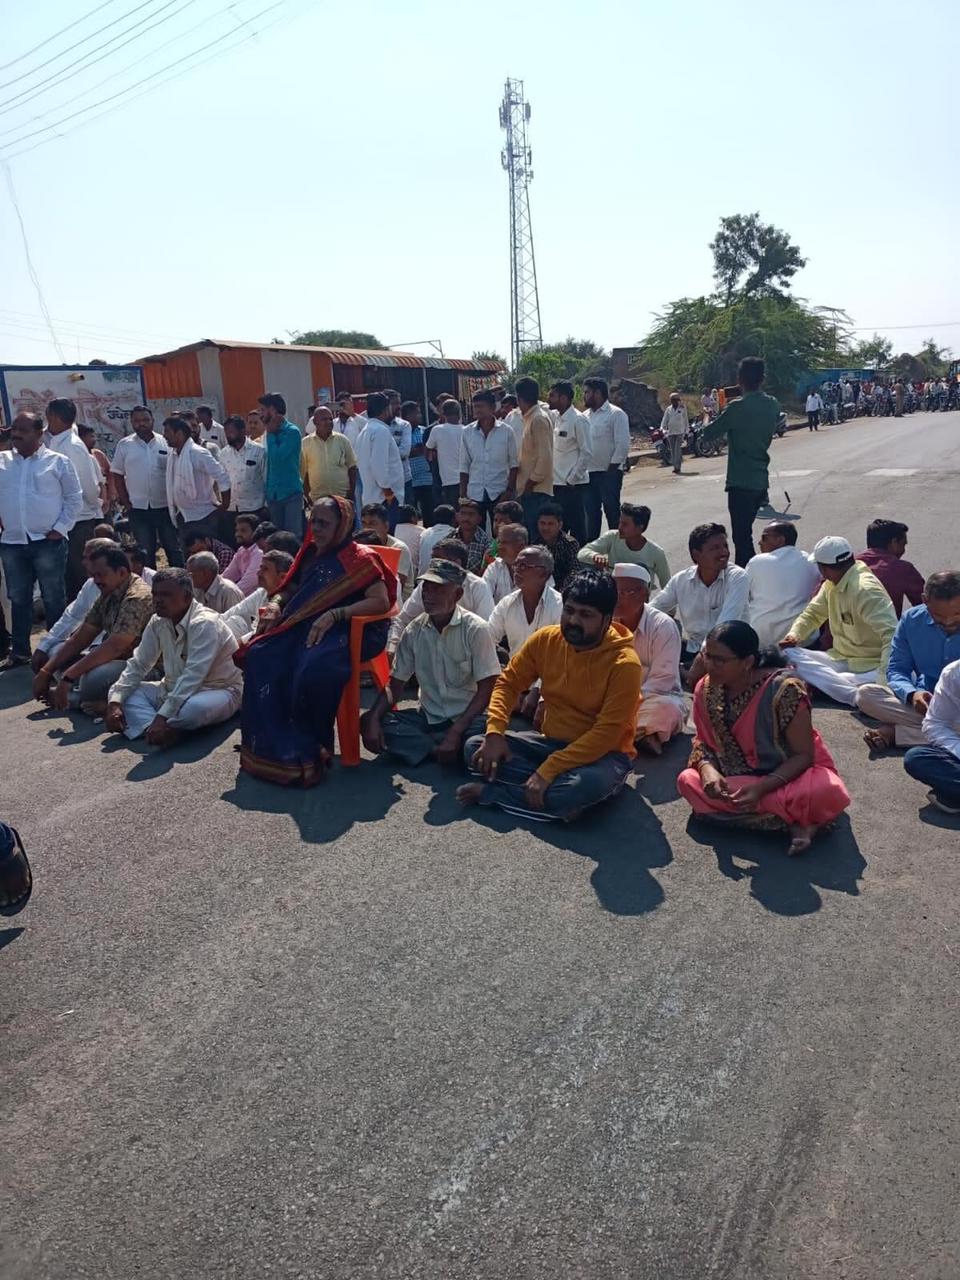 Farmers Protest : Saundare : MLA Rajendra Raut : सौंदरे गावच्या नागरिकांनी सोलापूर महामार्ग रोखला    : वीजपुरवठा सुरळीत करण्याची मागणी 